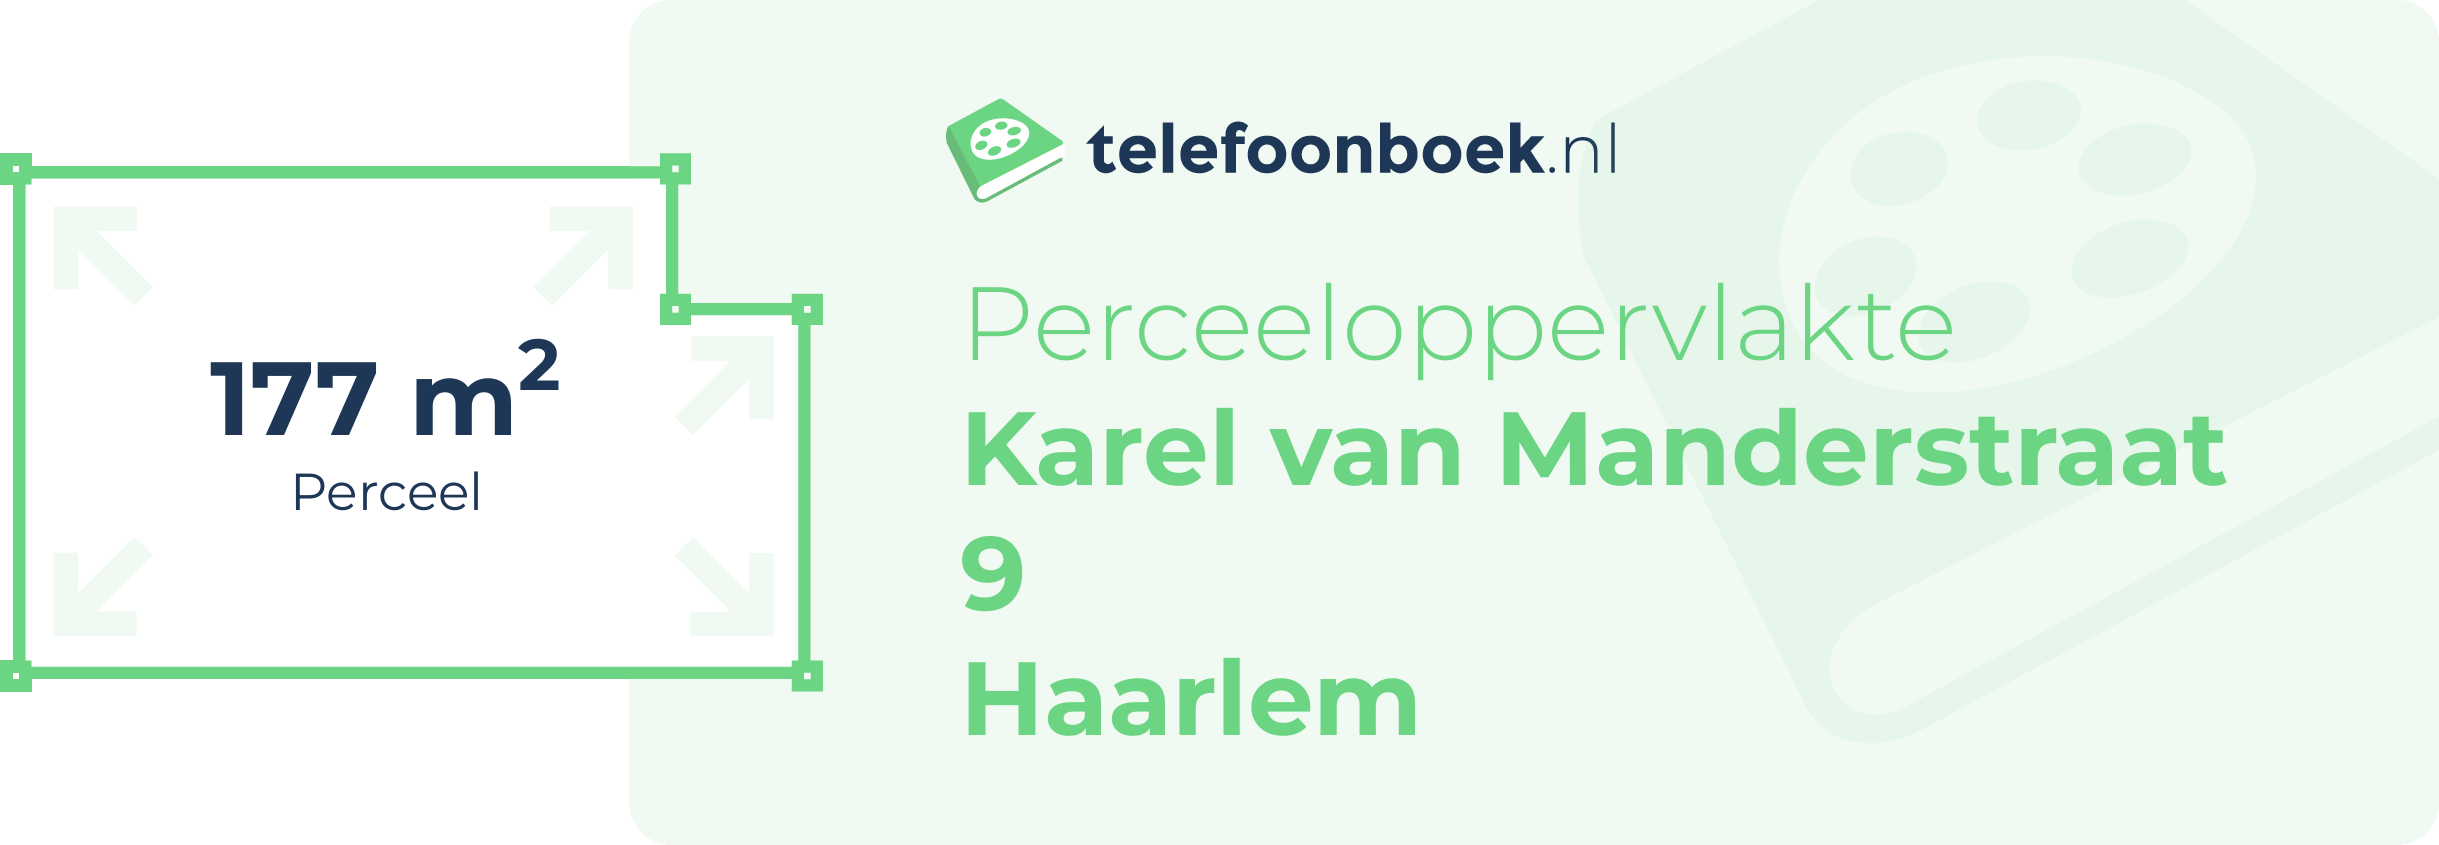 Perceeloppervlakte Karel Van Manderstraat 9 Haarlem